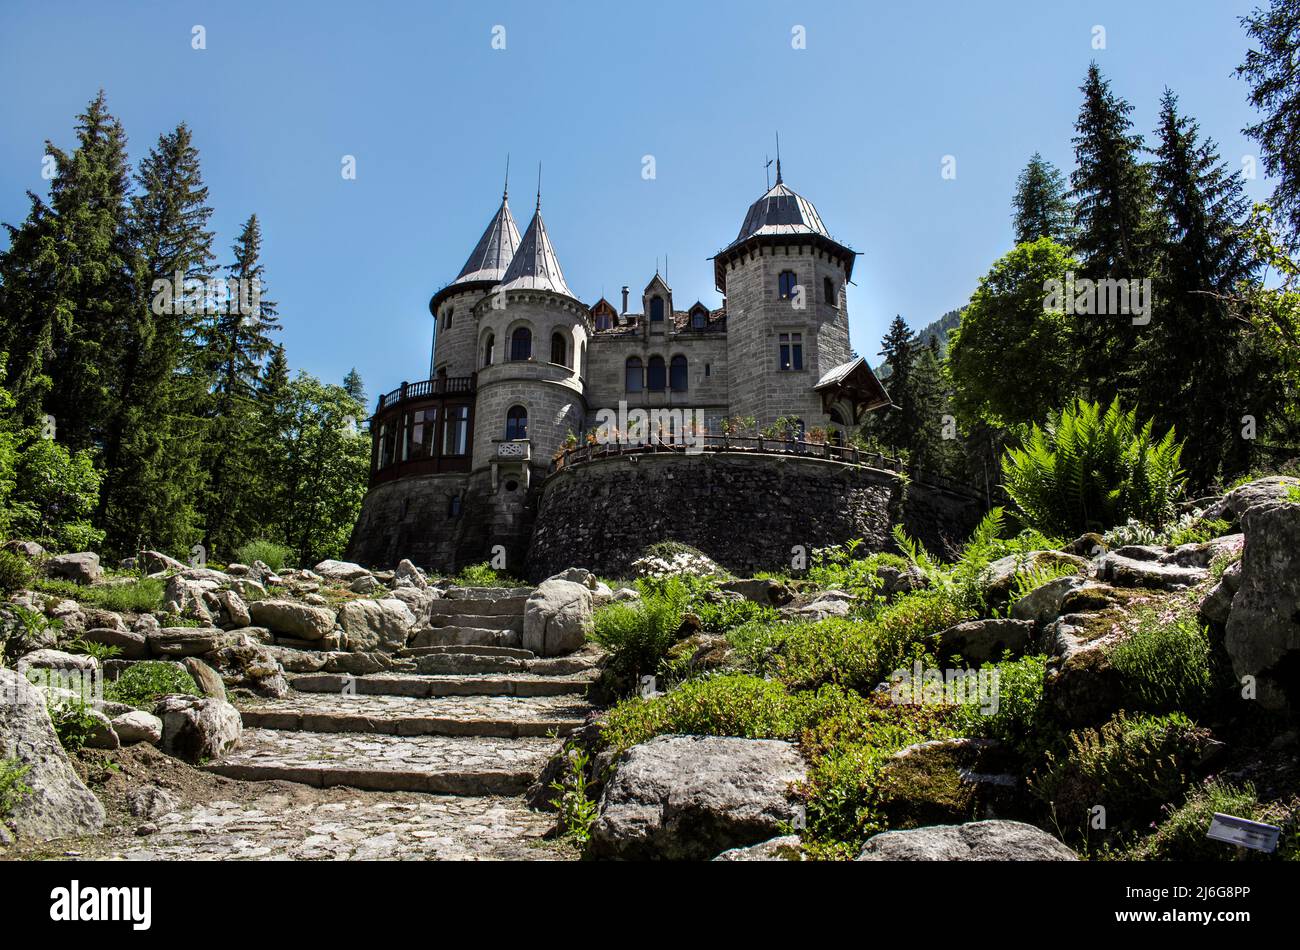 Castello Savoia, Gressoney-Saint-Jean, Aoste, Valle d'Aoste, italia - Château de Savoia, Vallée d'Aoste, Italie Banque D'Images